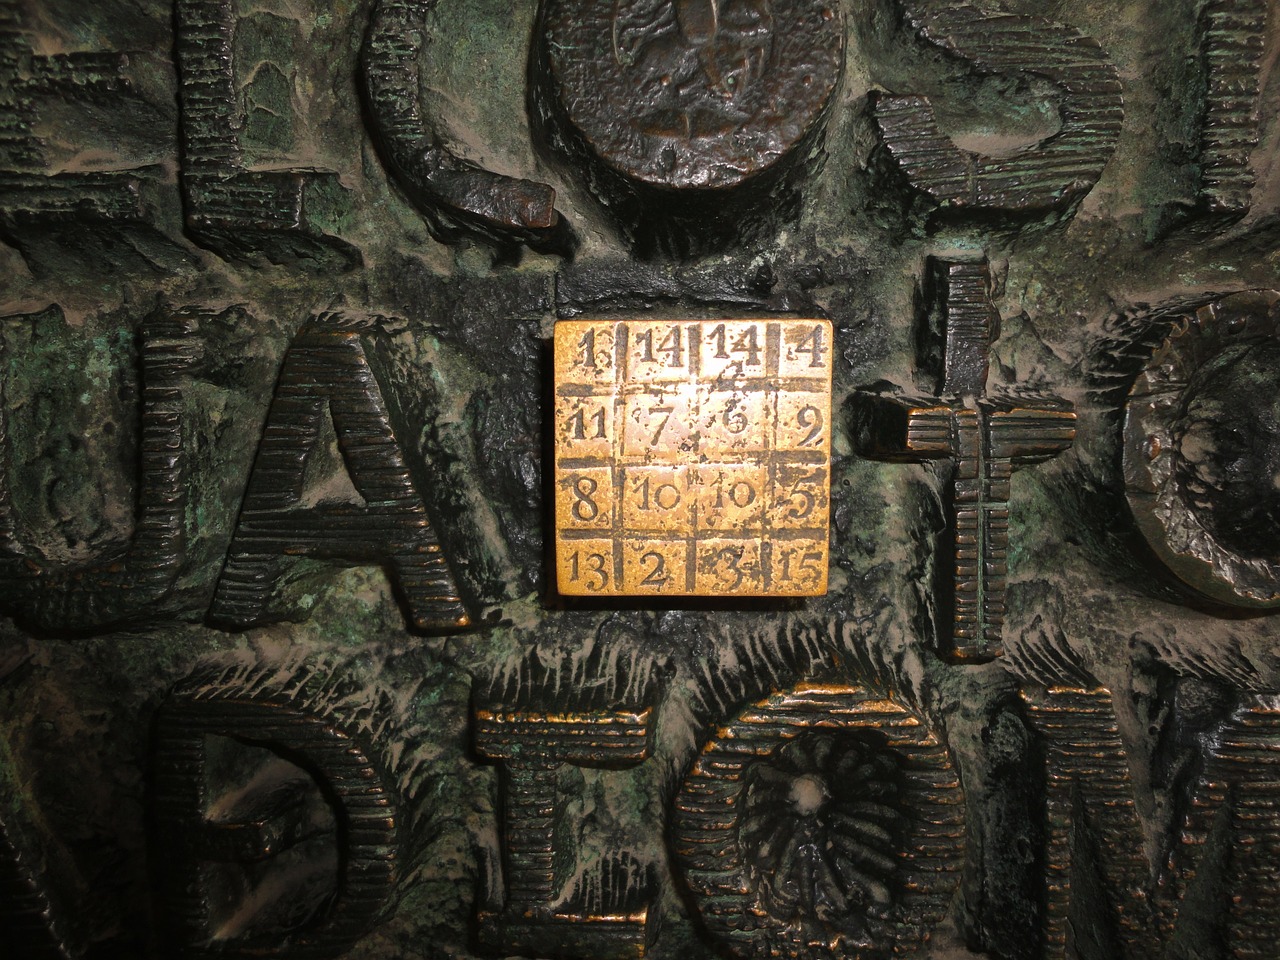 西班牙巴塞隆納聖家堂內一組魔方陣，以聖經記載耶穌受難的歲數33作為魔數字。但此魔方陣有些數字是重複的，並不屬於傳統定義上的魔方陣。